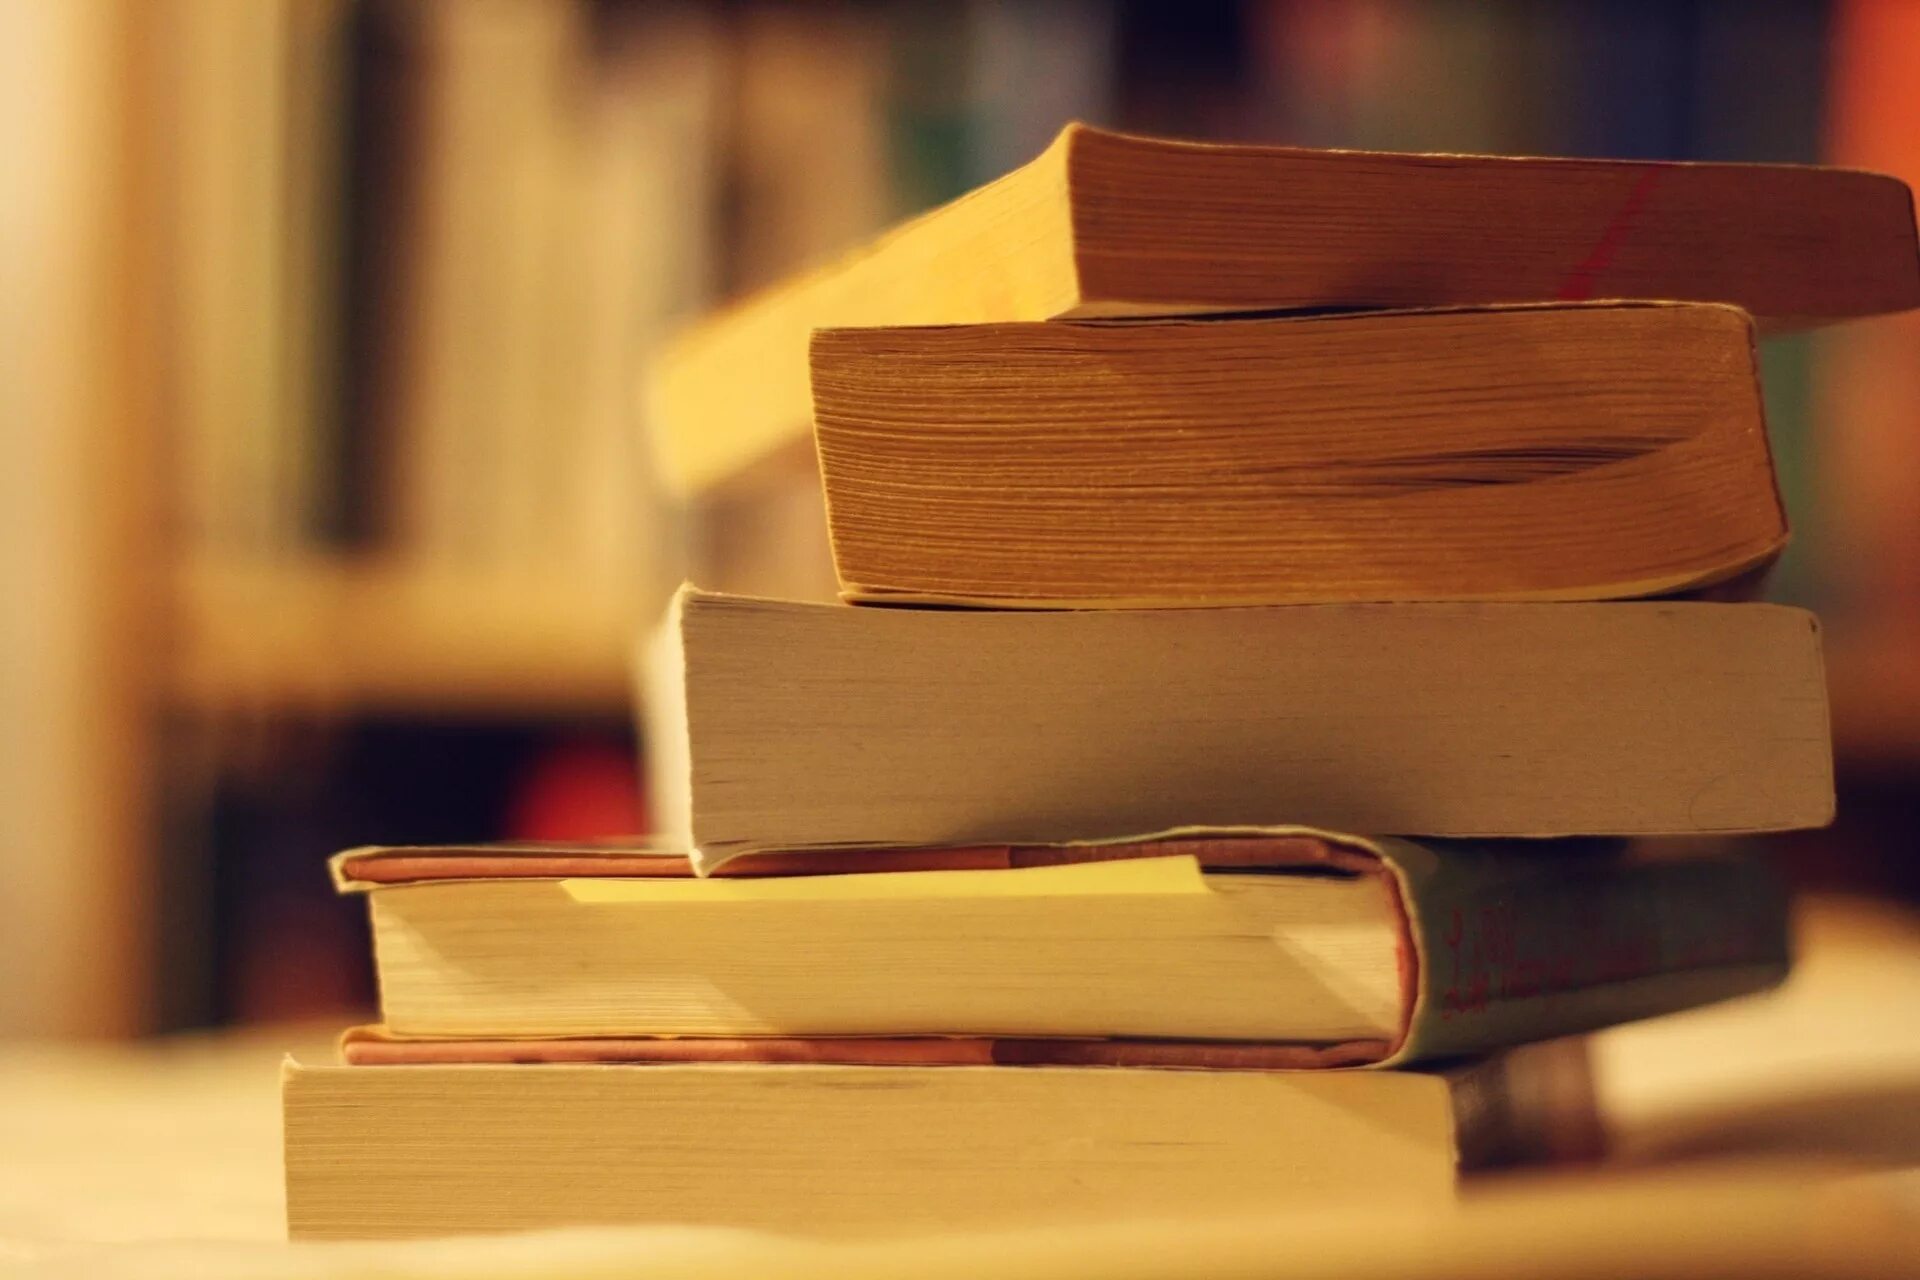 Книги лежат стопкой. Стопка книг. Стол «книга». Изображение книги. Красивая стопка книг.